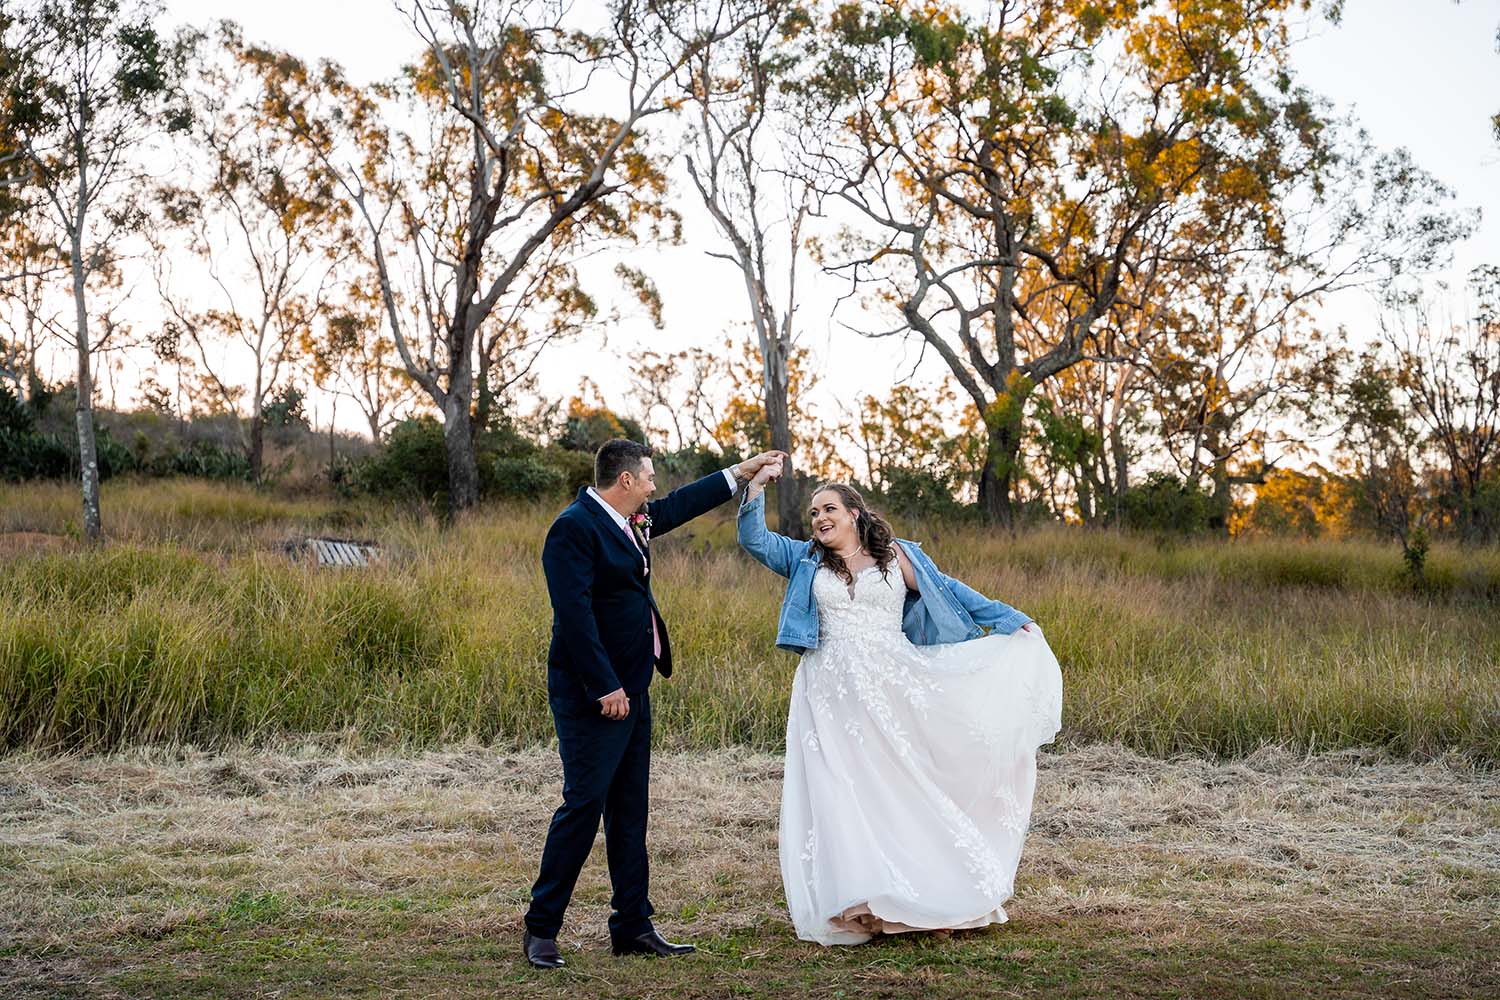 Wedding Photography - Couple dancing